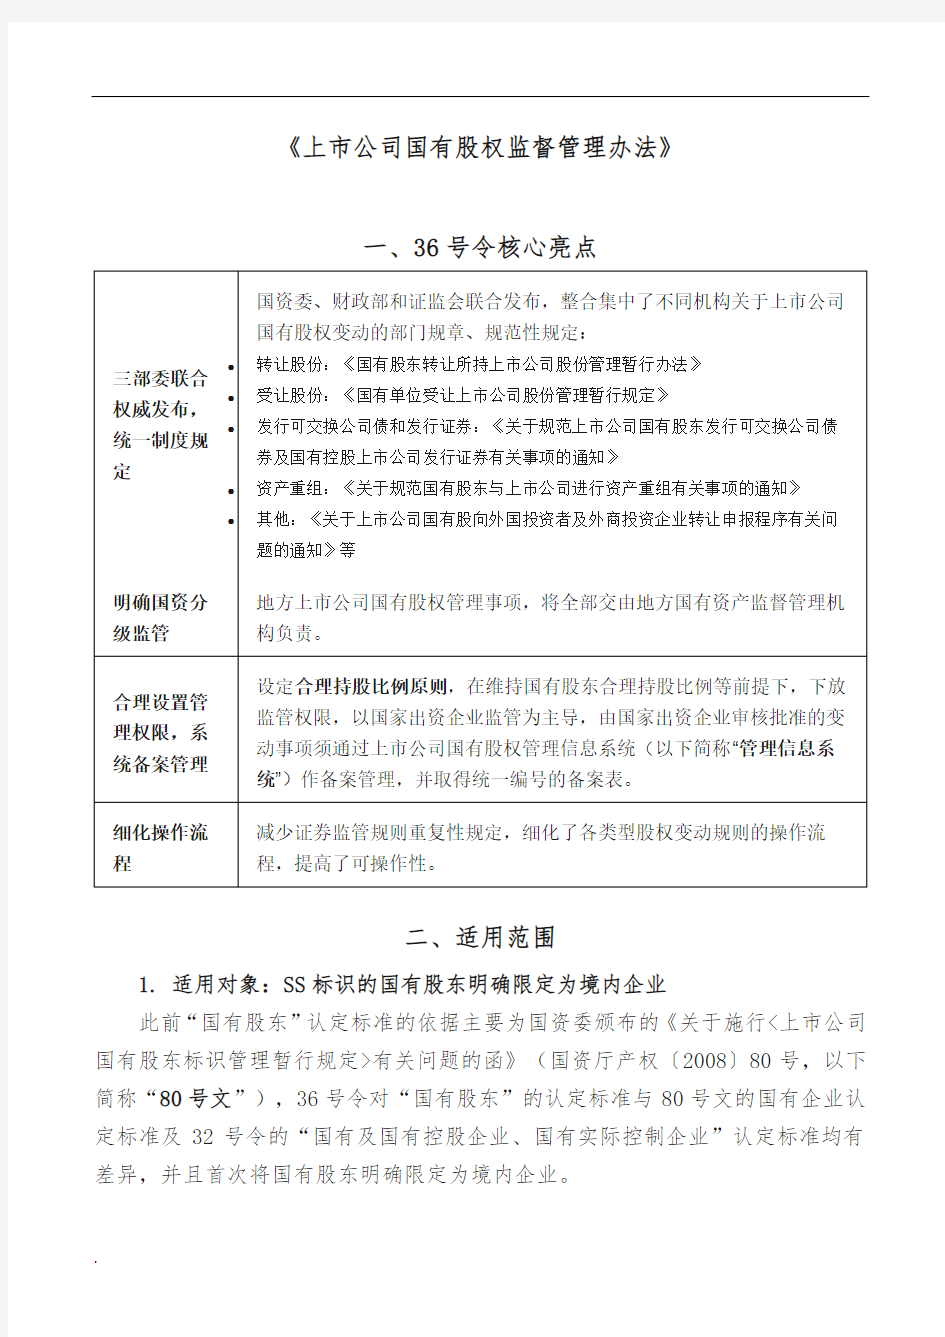 上市公司国有股权监督管理办法 36号令解读 提炼(修订版).doc